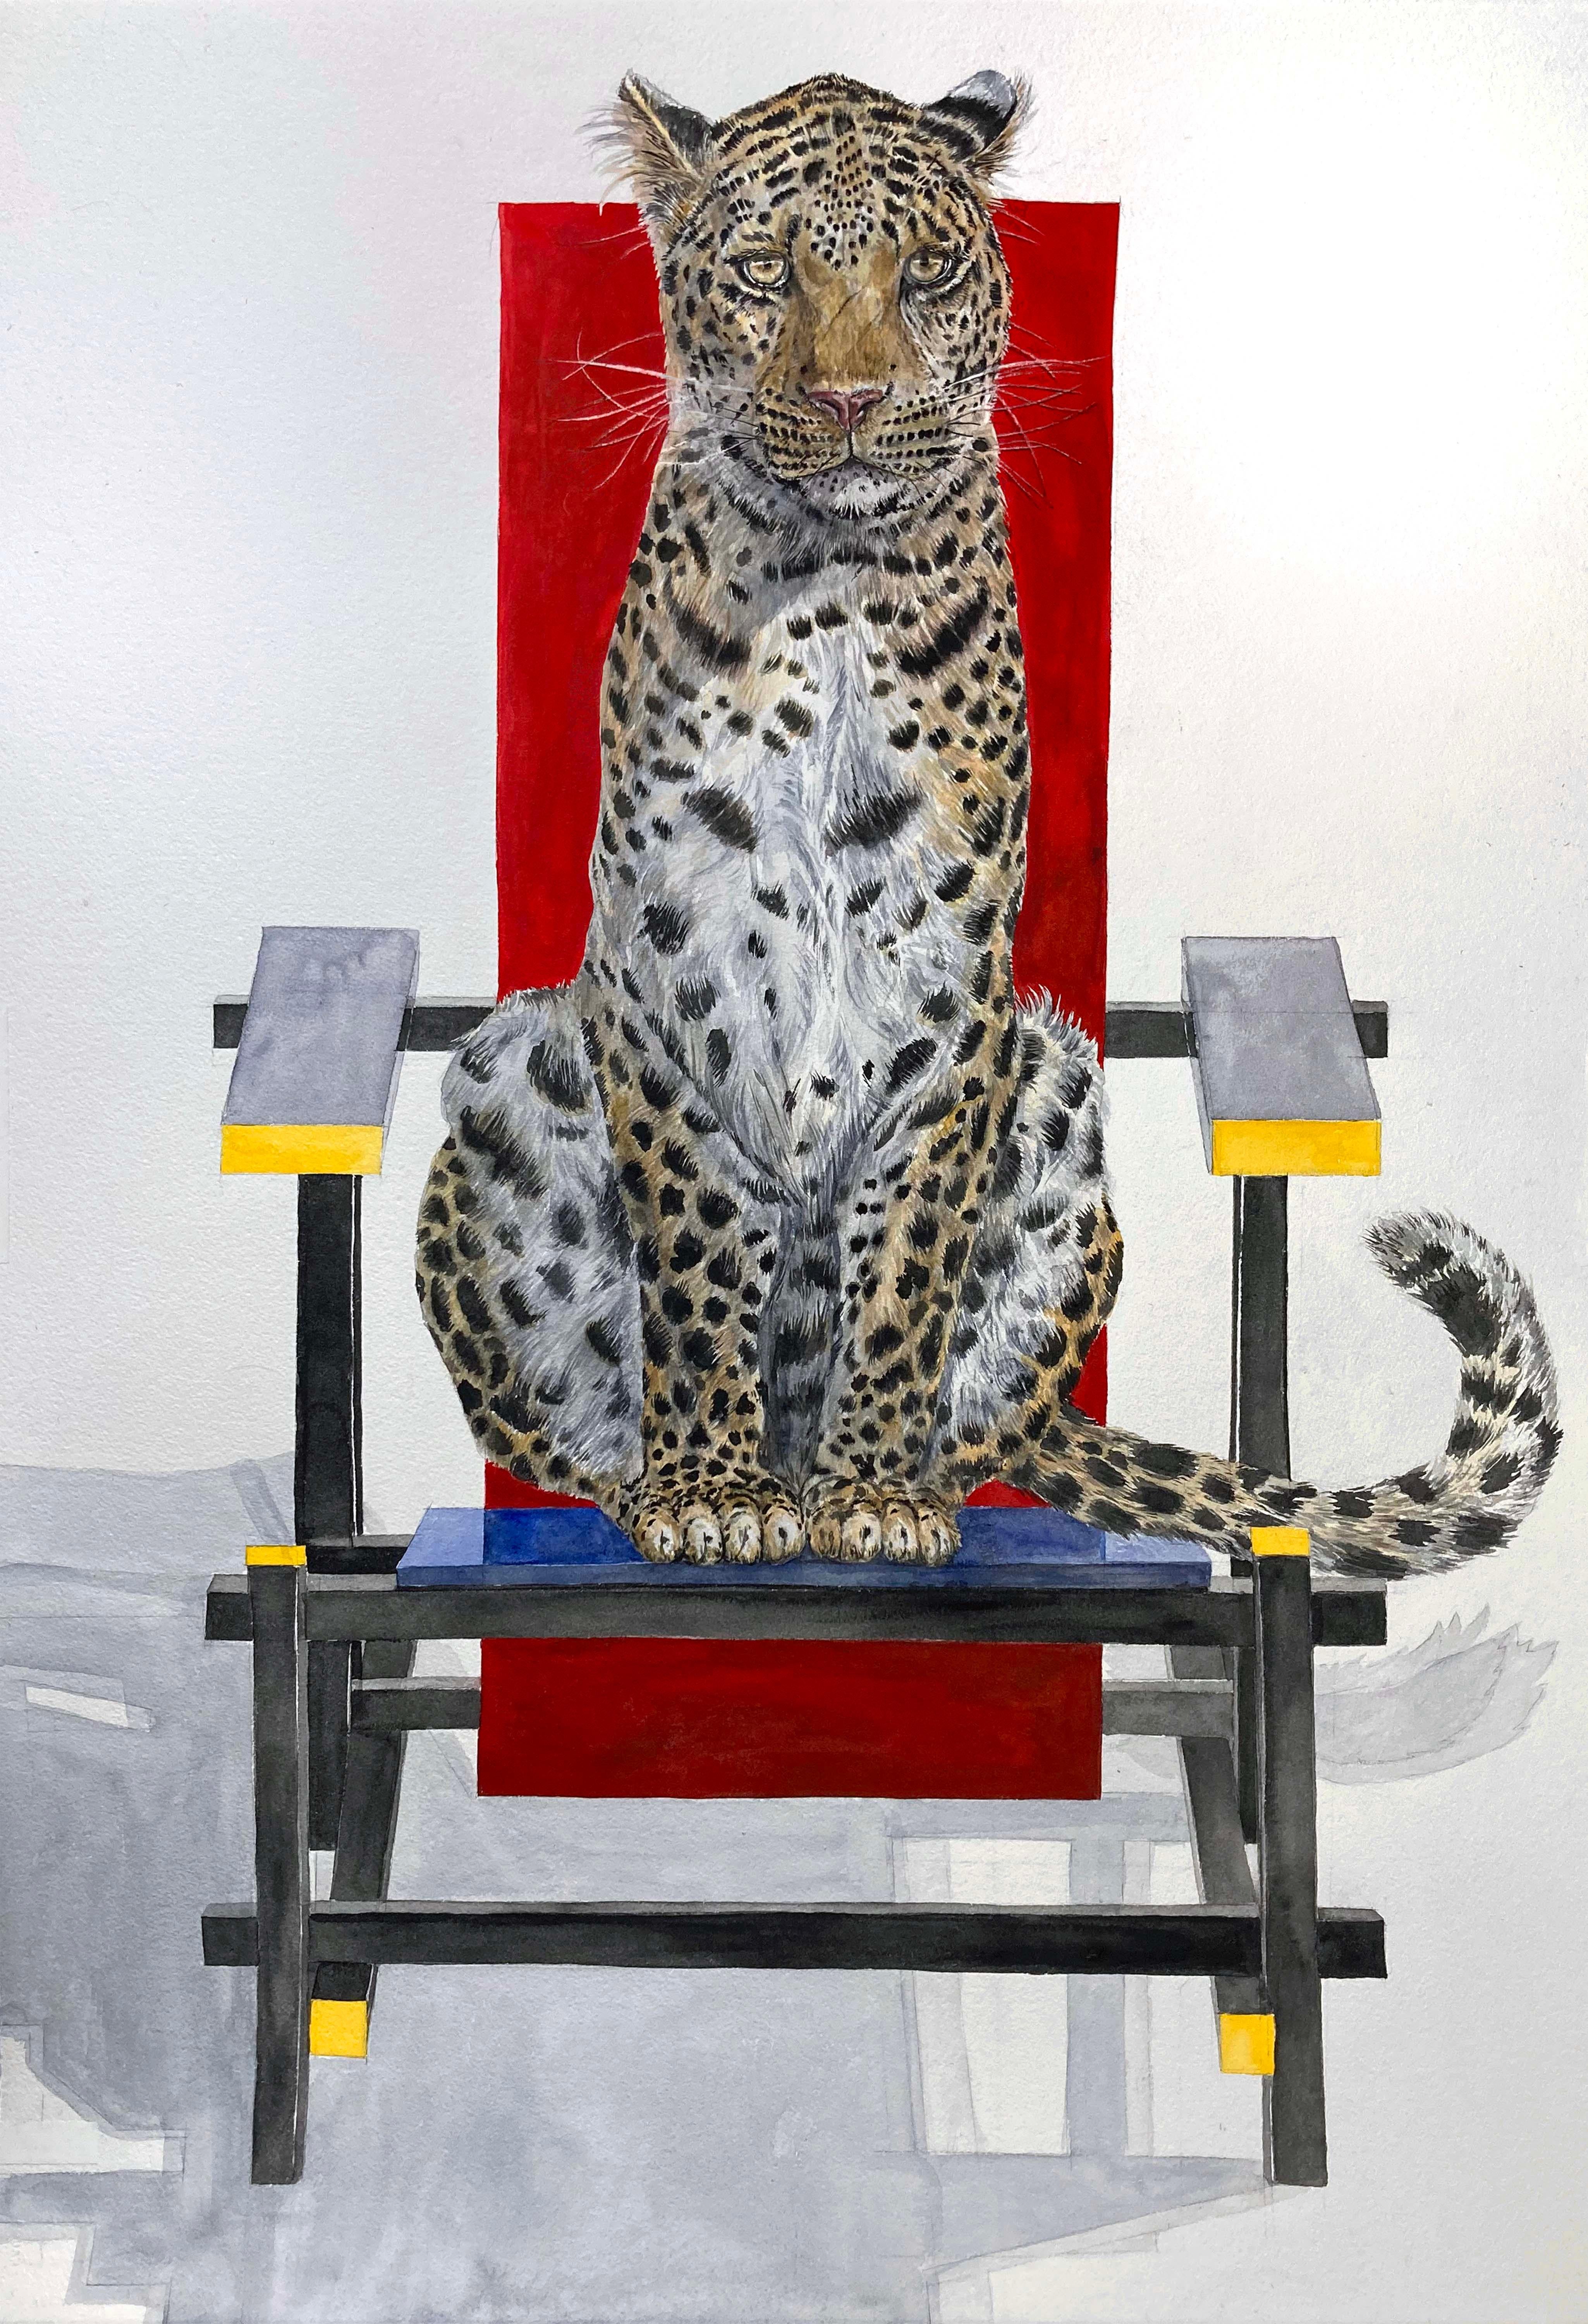 Thomas Broadbent Animal Painting – "Leopard auf Rietveld-Stuhl" gerahmte zeitgenössische surrealistische Aquarellmalerei